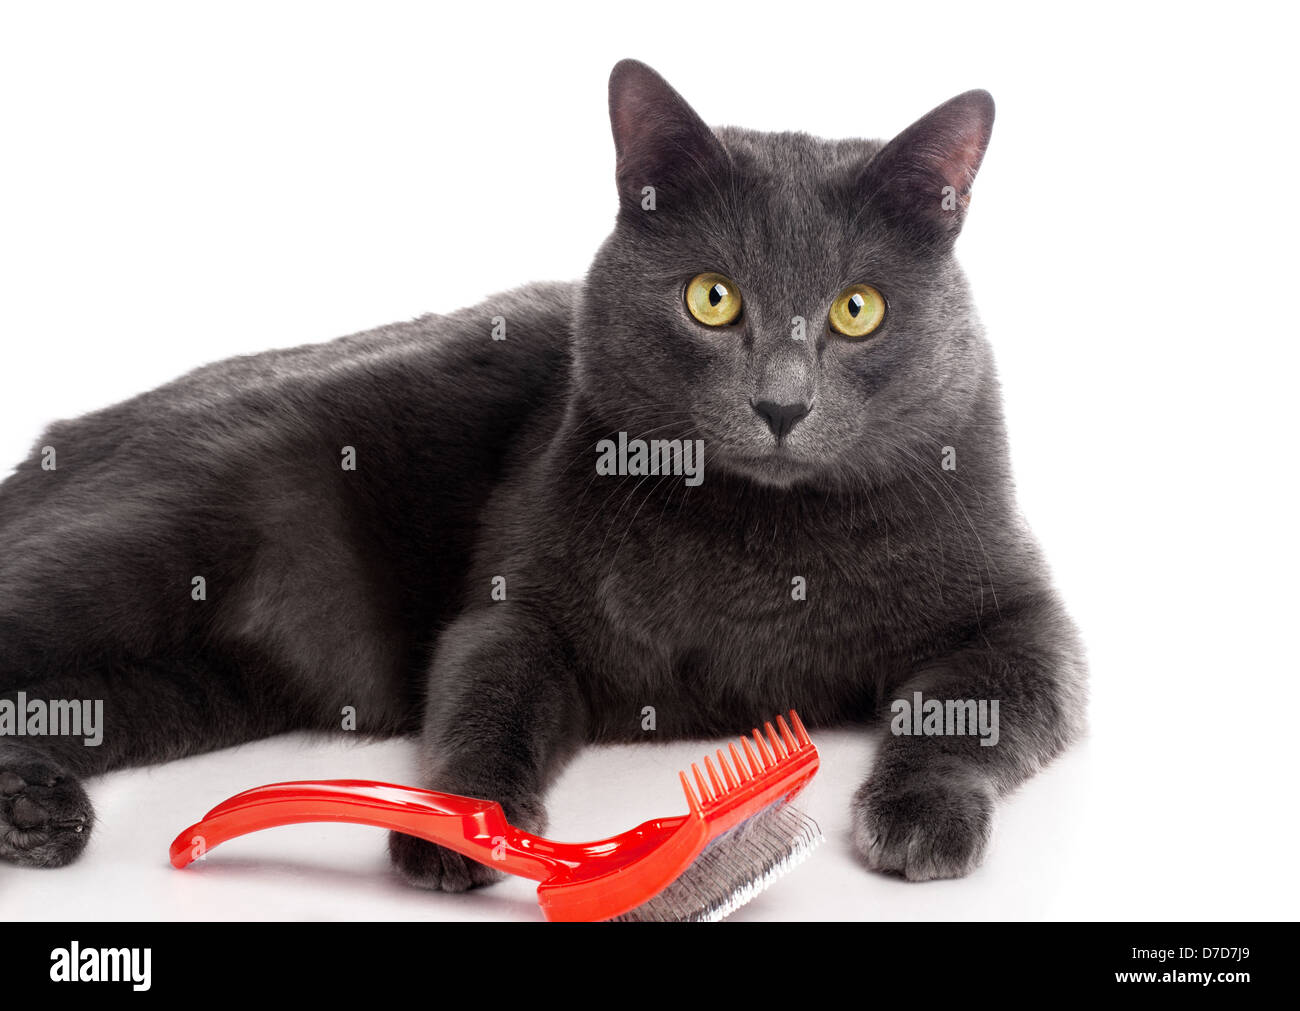 British Shorthair cat Stock Photo